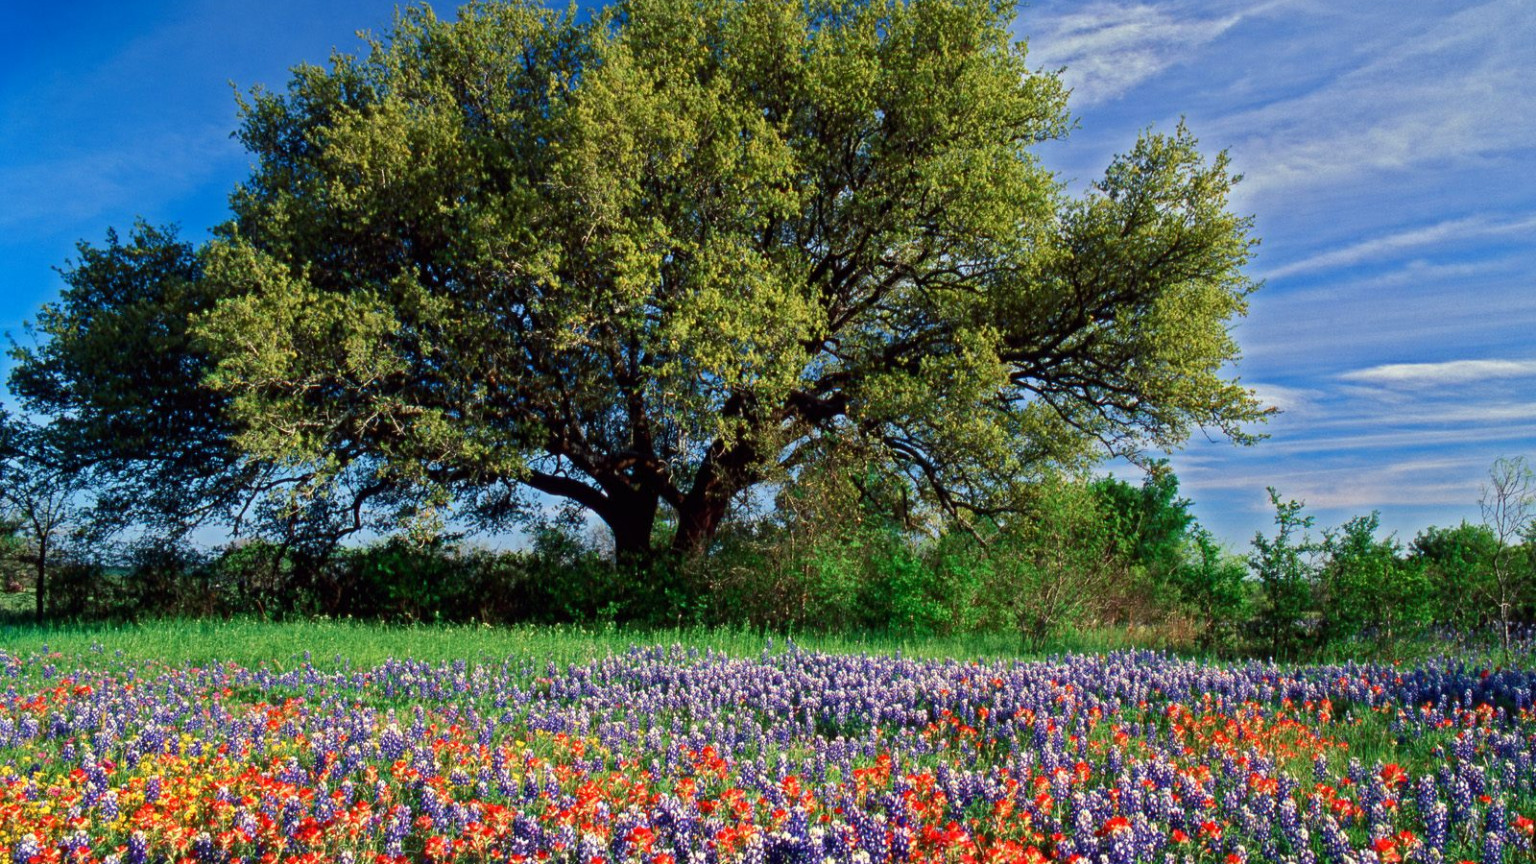 Live Oak among Texas Paintbrush, and Bluebonnets, Texas.jpg